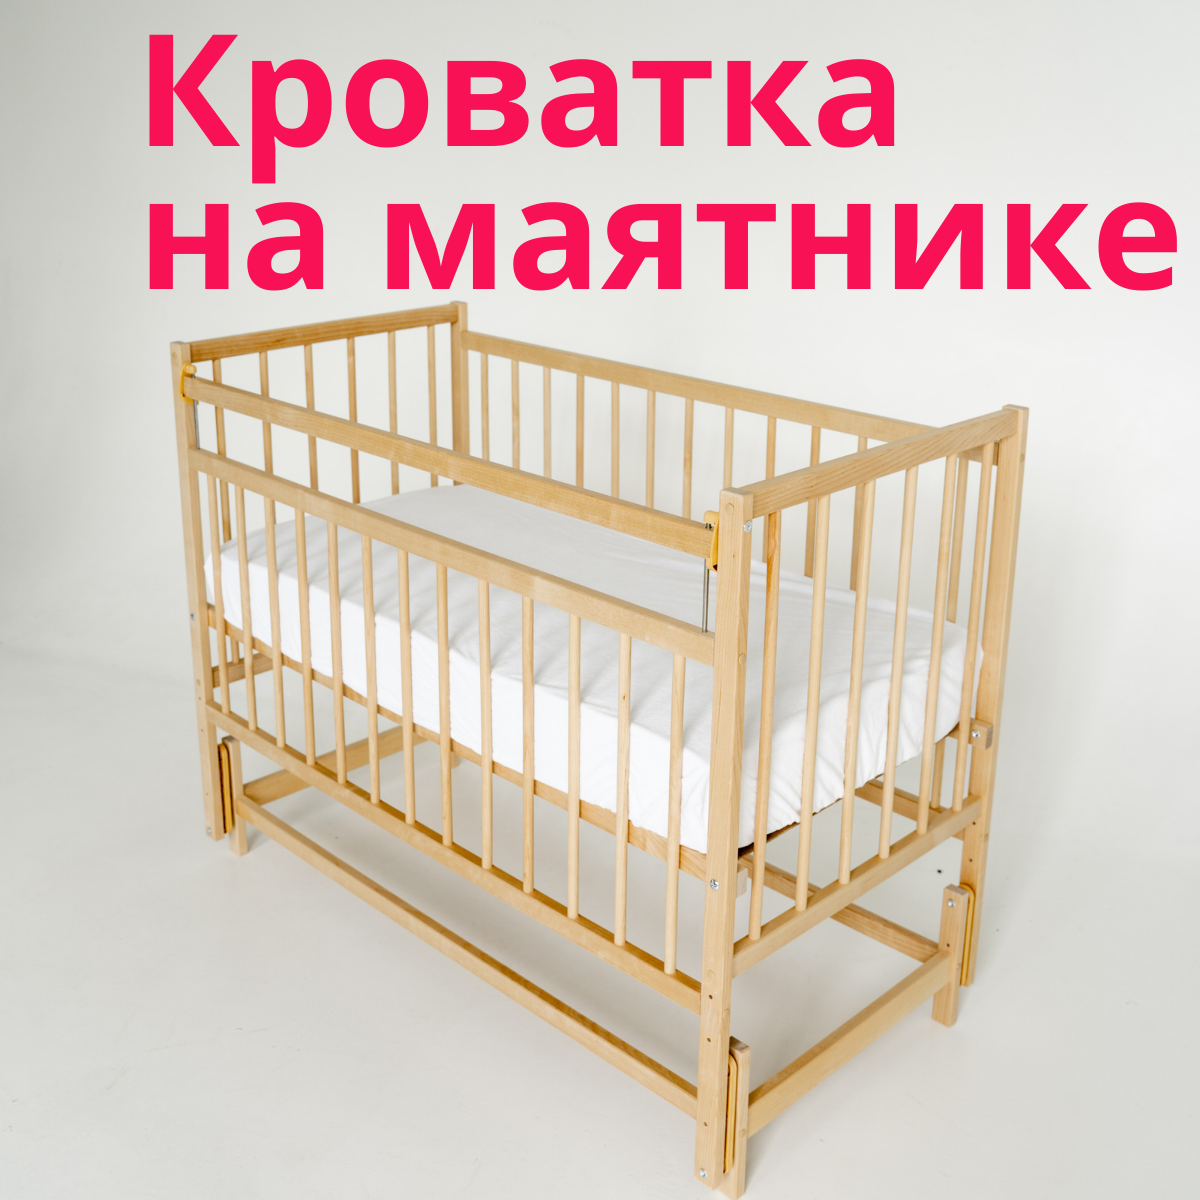 "Кроватка Промтекс" - натуральная кроватка с продольным маятником для новорожденного